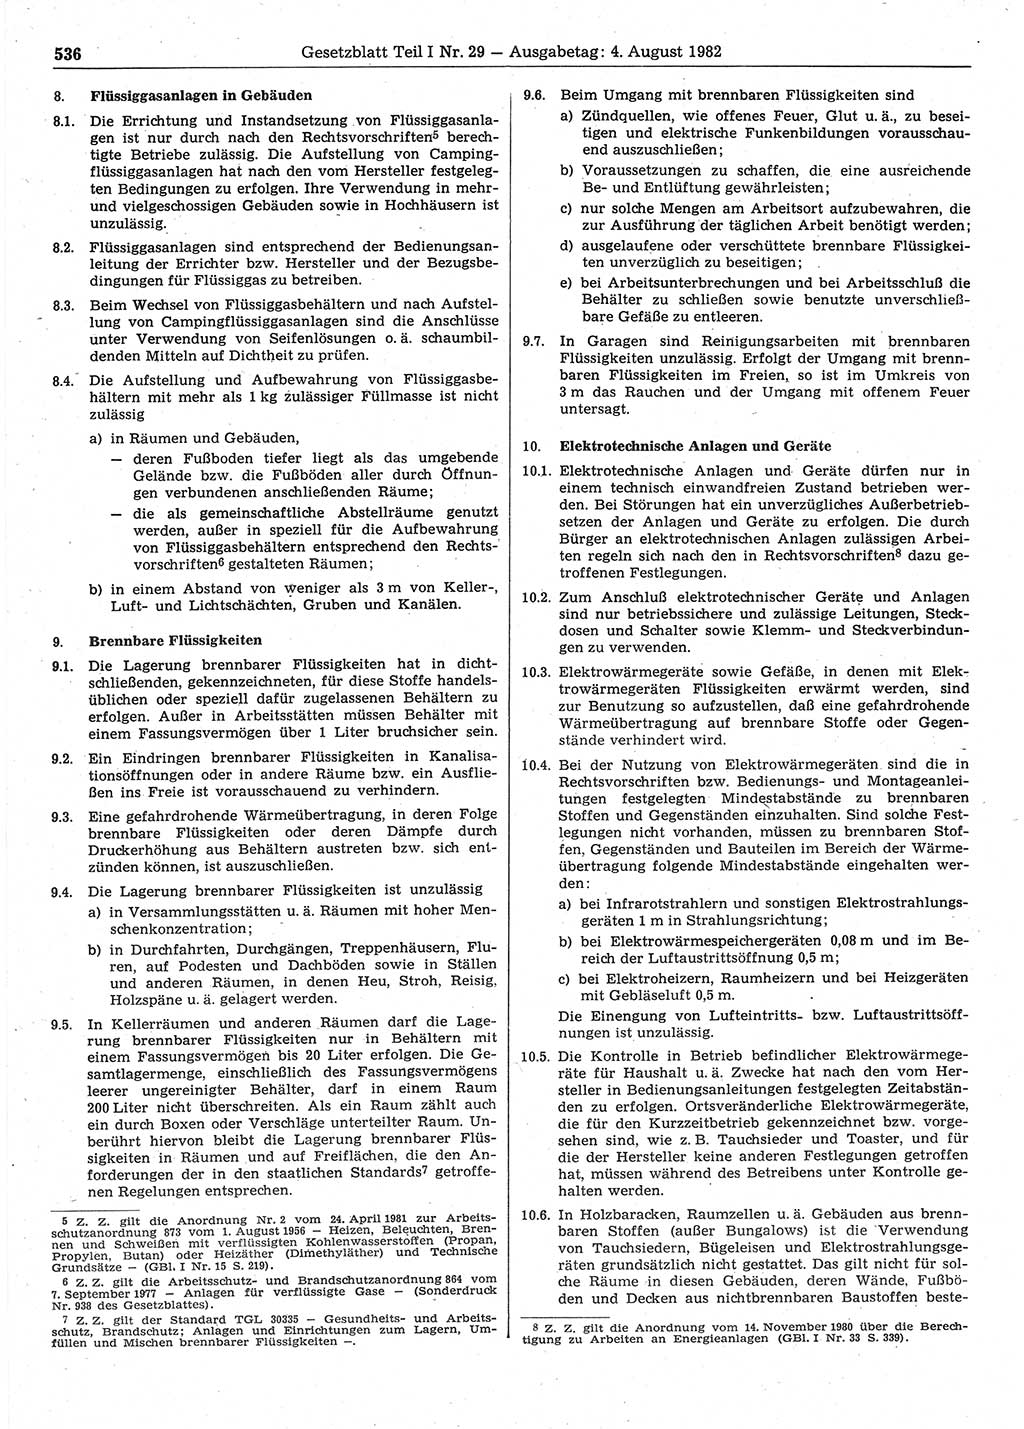 Gesetzblatt (GBl.) der Deutschen Demokratischen Republik (DDR) Teil Ⅰ 1982, Seite 536 (GBl. DDR Ⅰ 1982, S. 536)